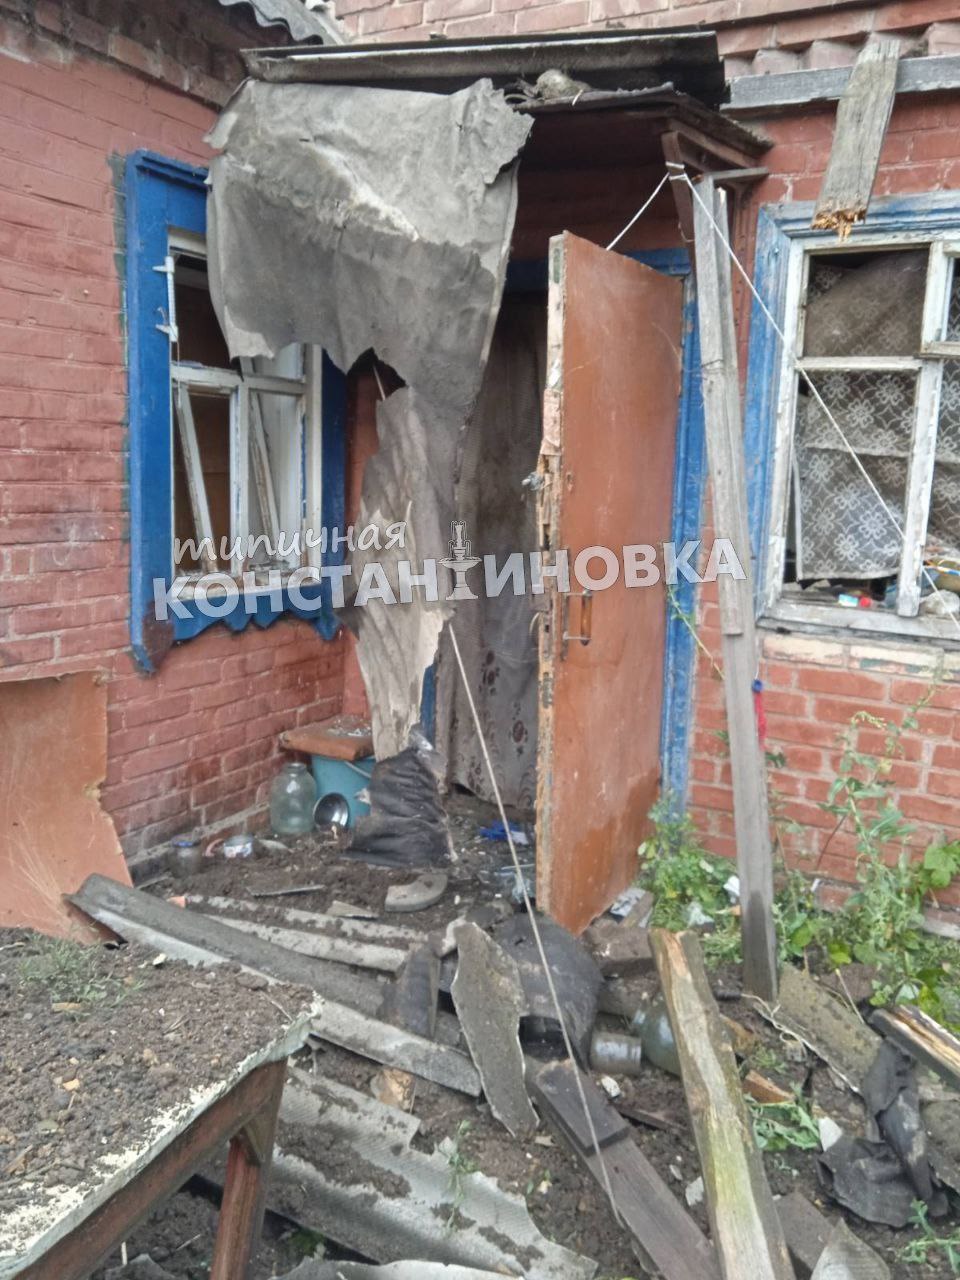 Дом, разрушенный оккупантами в Константиновке 21 июля